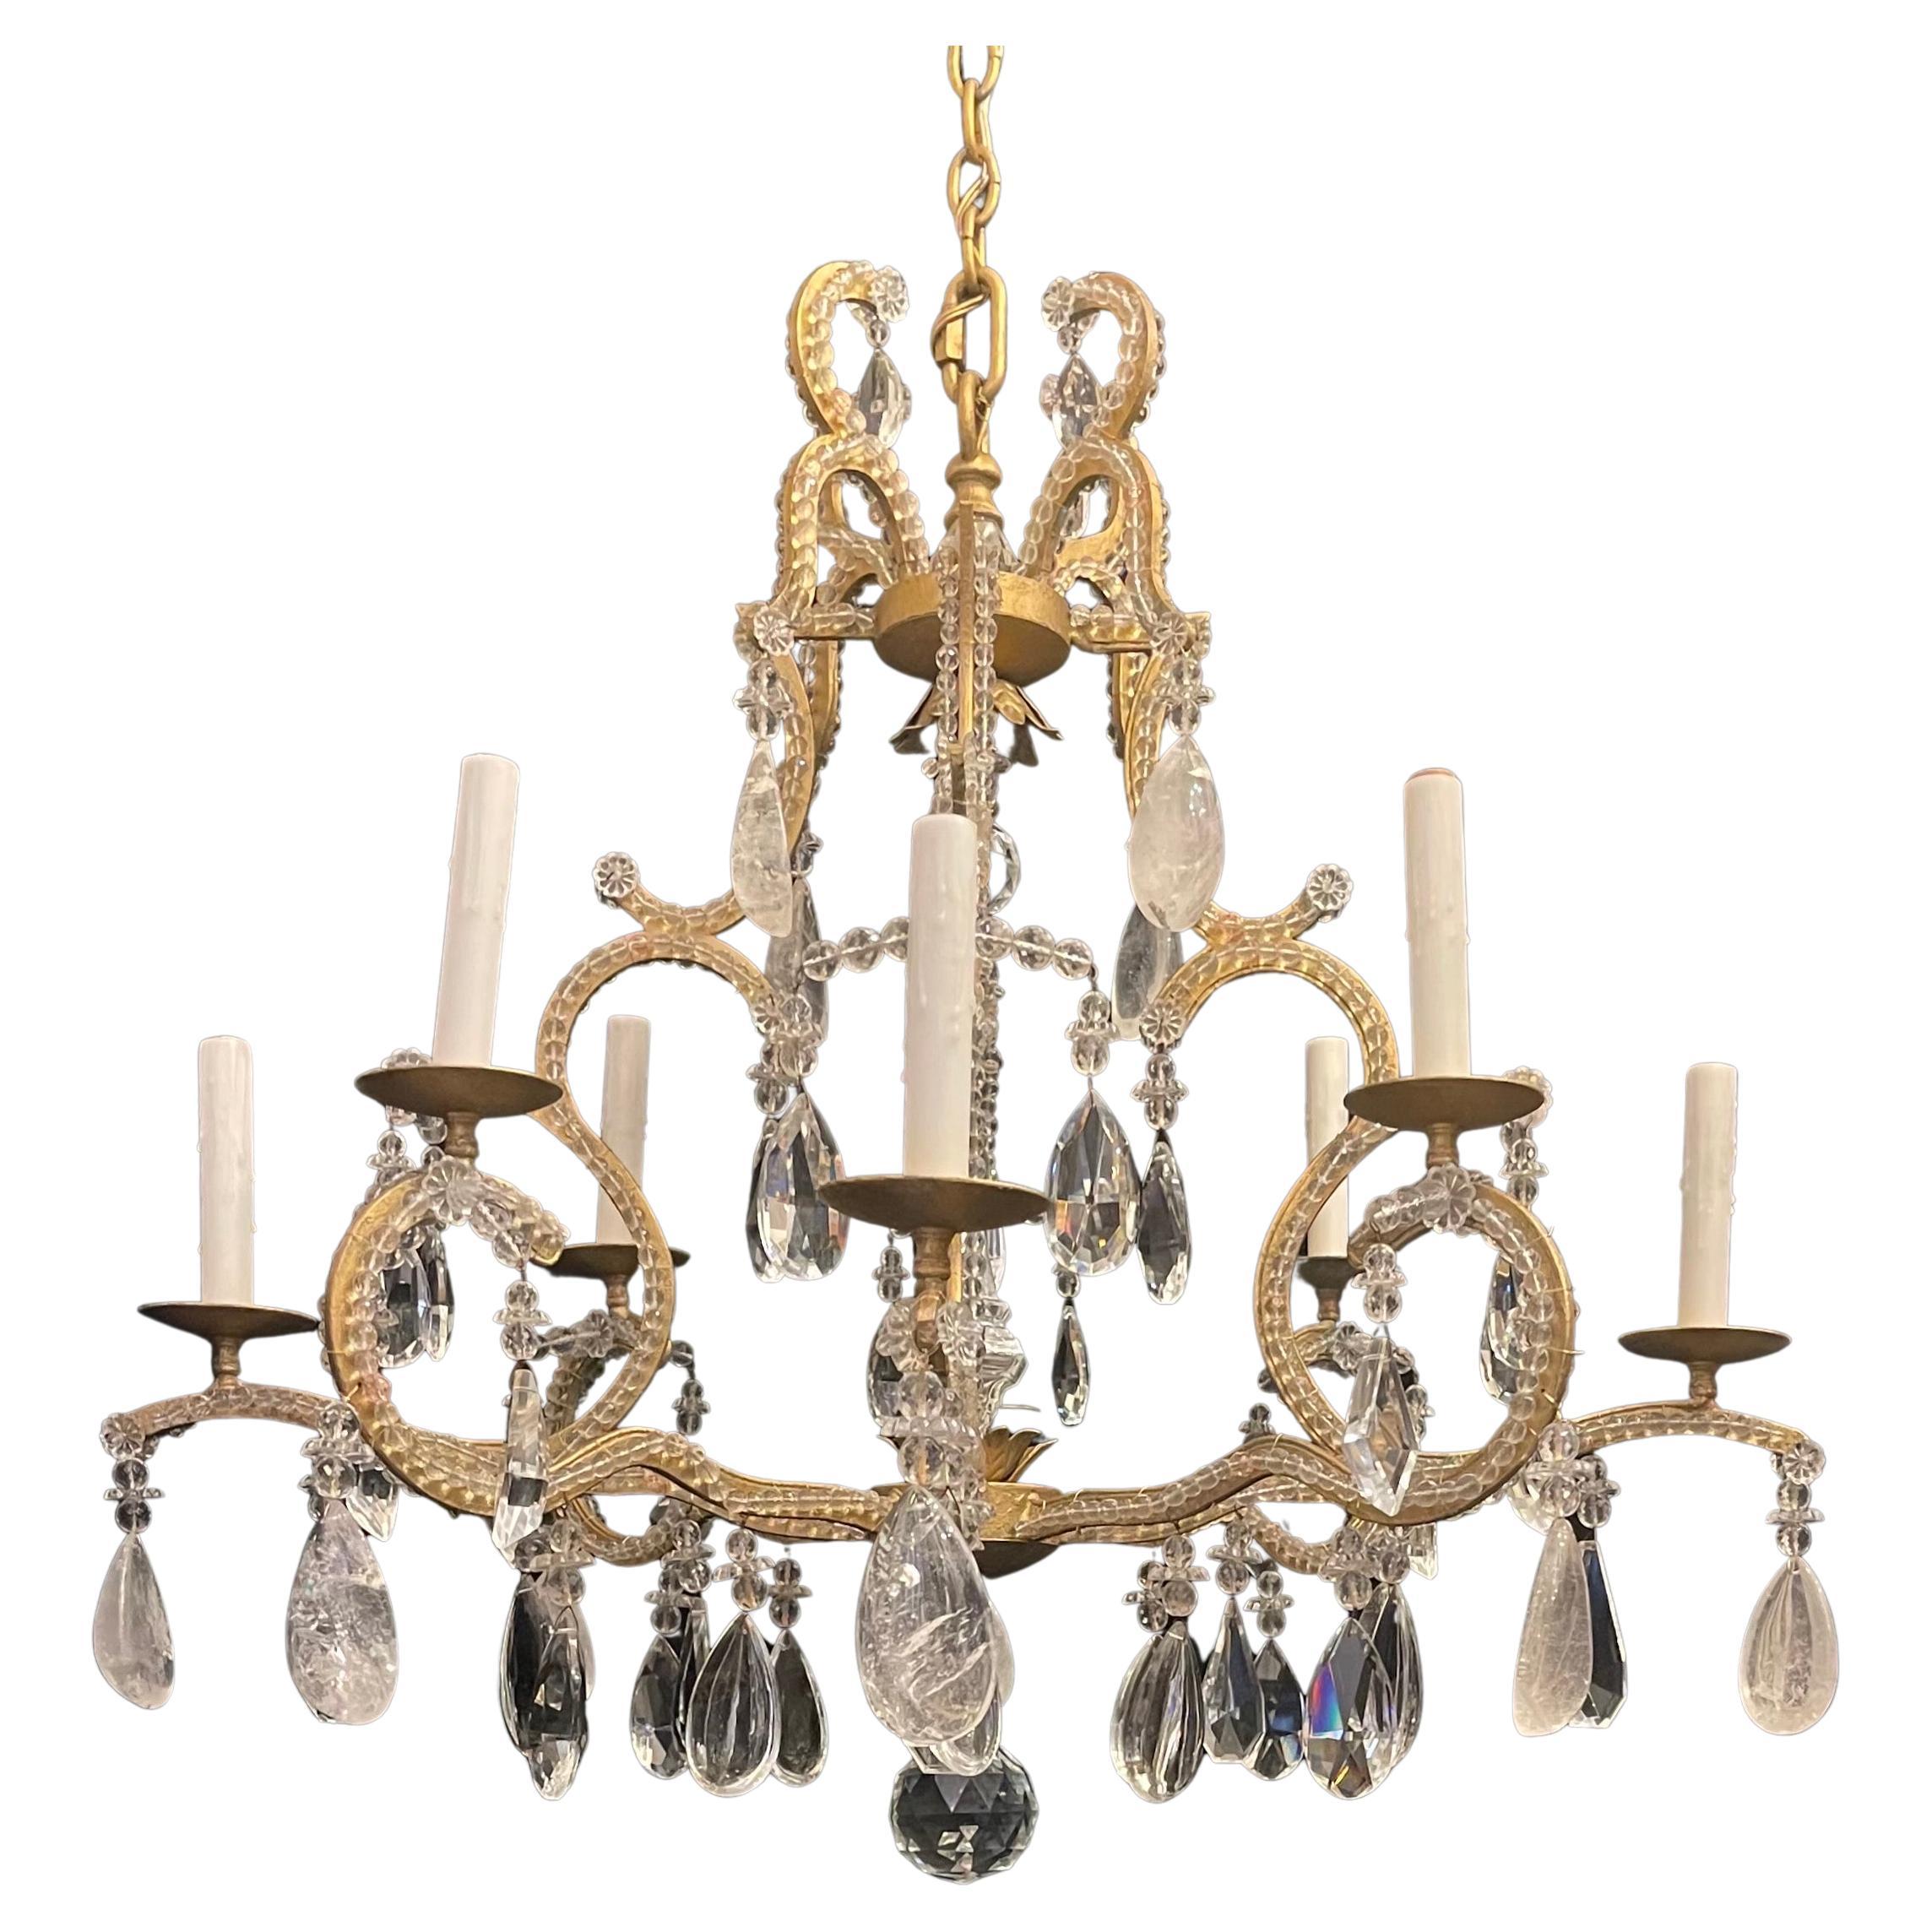 Eine wunderbare Mid-Century Modern Maison Baguès Stil Gold vergoldet mit Perlen Arme und Blumen, die zu  Bergkristall Tropfen große 8 Kandelaber Licht Kronleuchter